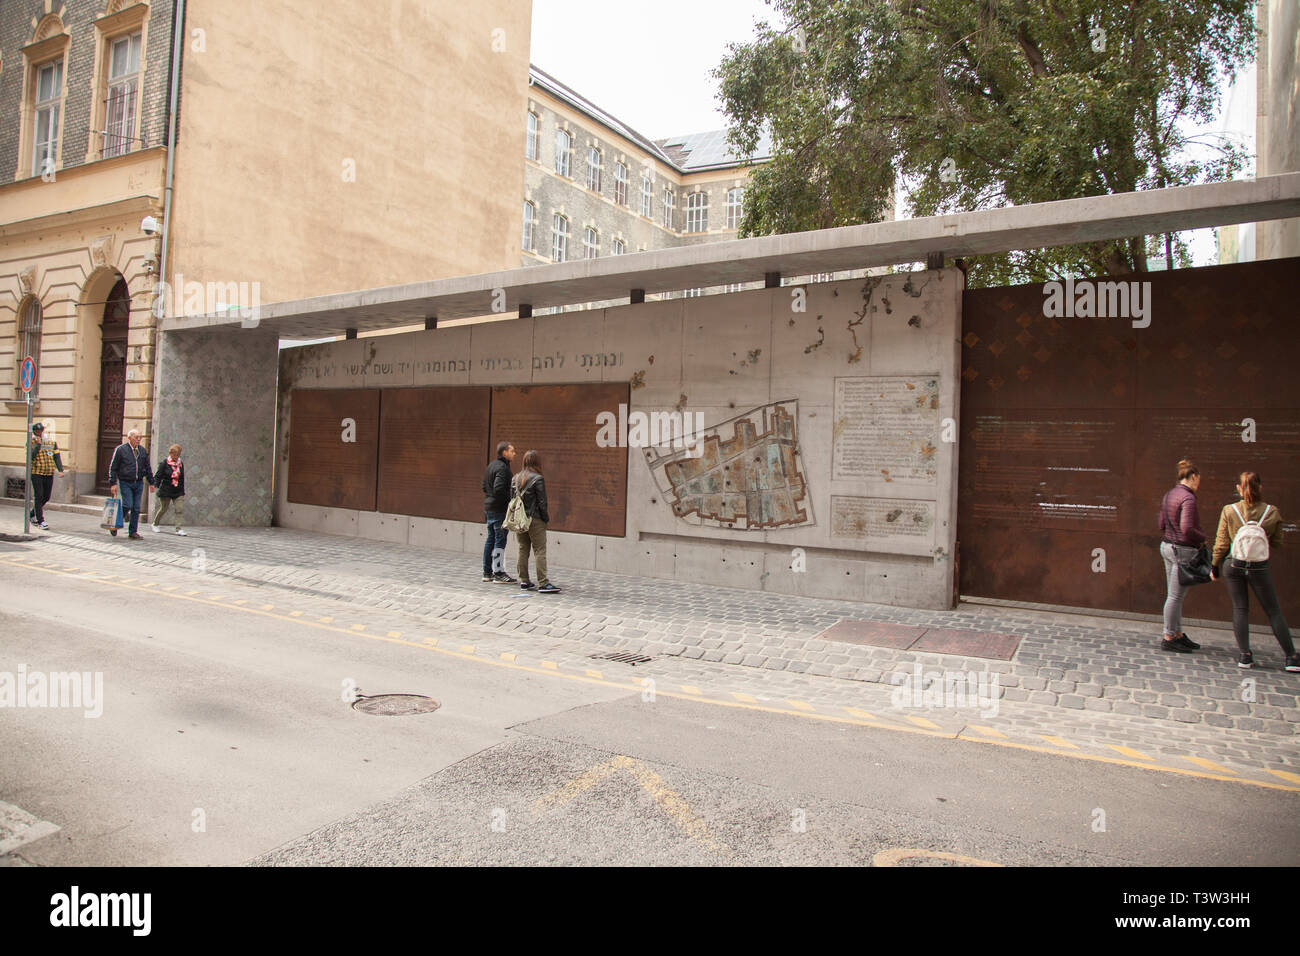 BUDAPEST, Ungarn - 20. SEPTEMBER 2017: eine Wand des ehemaligen jüdischen Ghettos Kennzeichnung in Budapest der Budapester Ghetto war ein NS-ghetto in Budapest Stockfoto